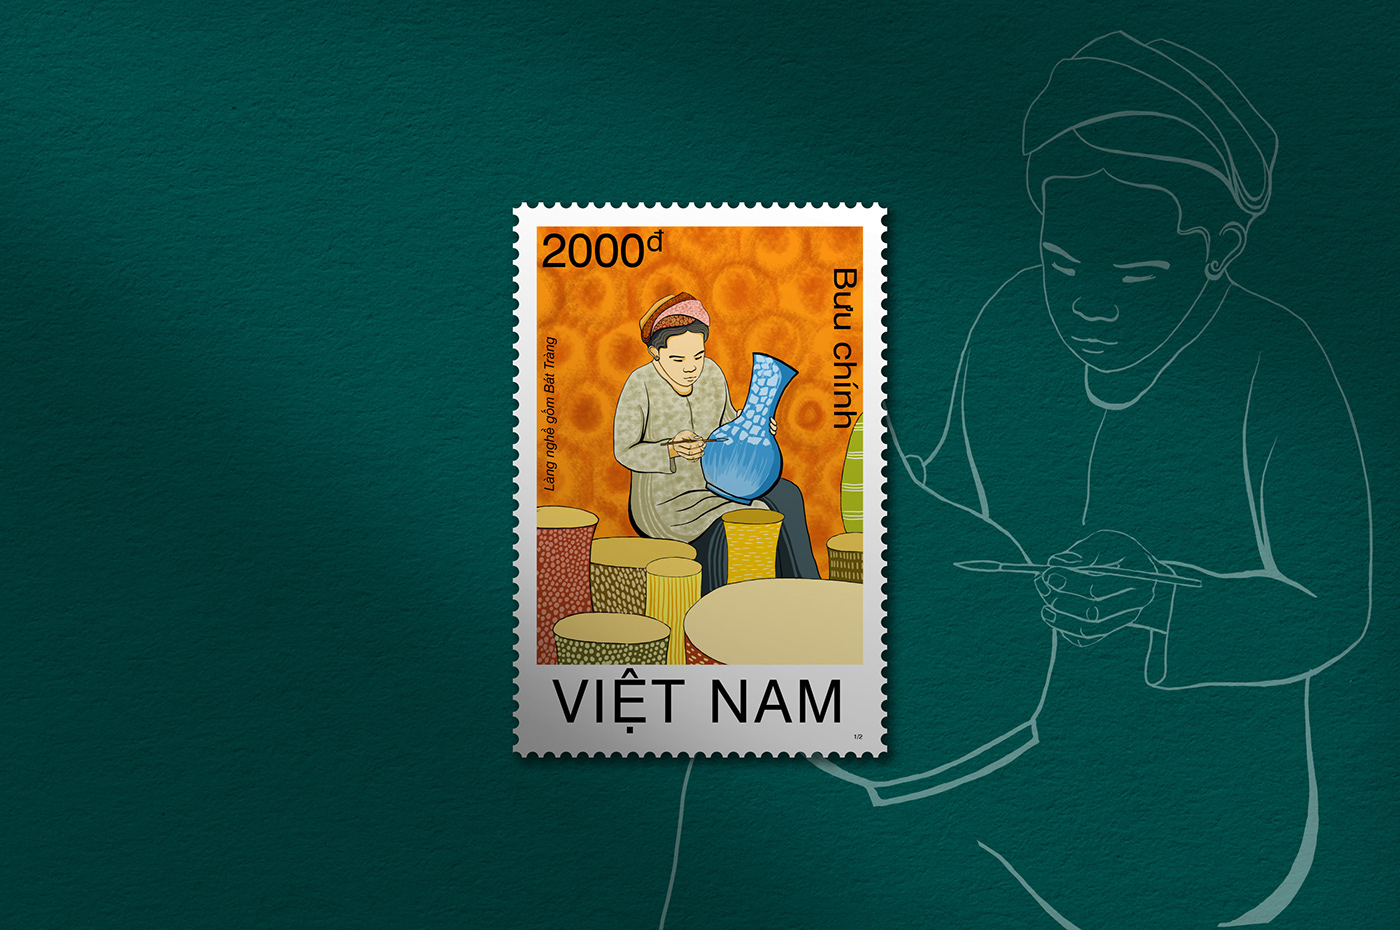 Bat Trang concept art designer Digital Art  digital illustration ilustracion postage stamps stamp Stamp Design village